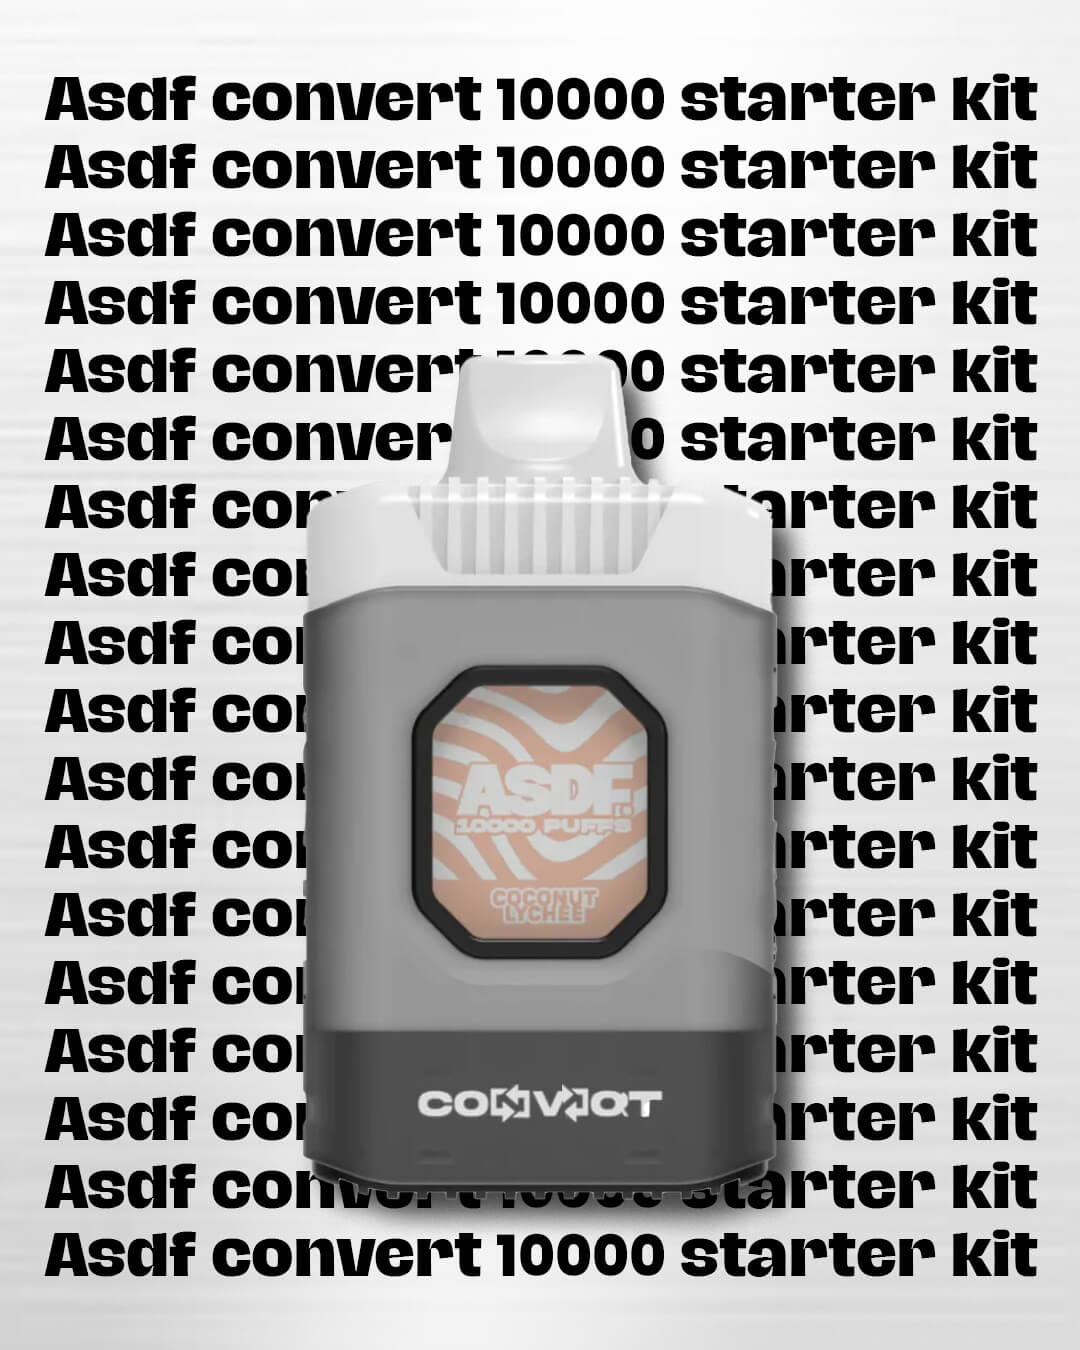 ASDF Convert 10000 Starter Kit